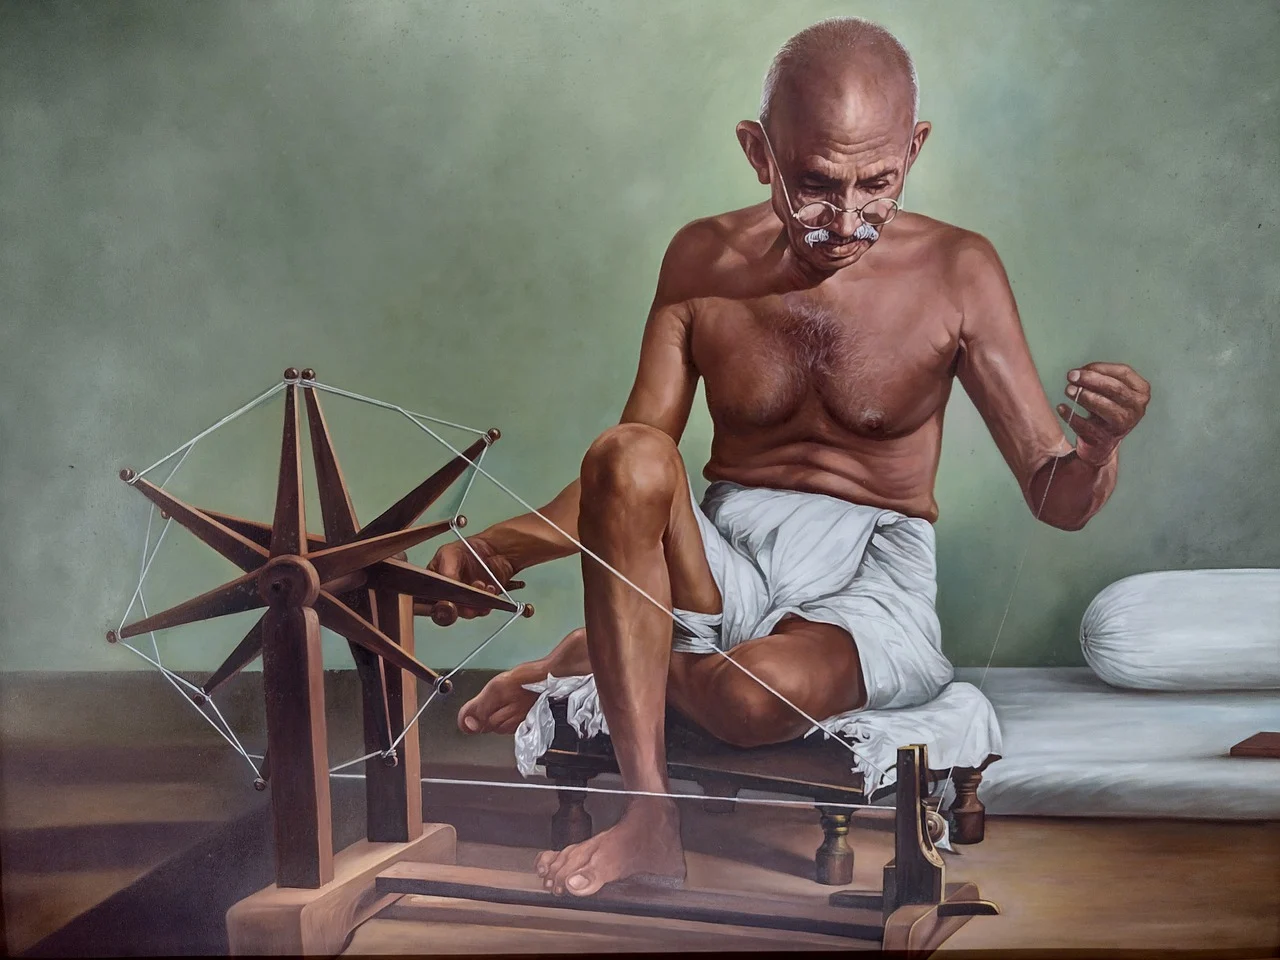 गांधी जयंती: अहिंसा और सत्य के मार्ग पर चलने का संकल्प